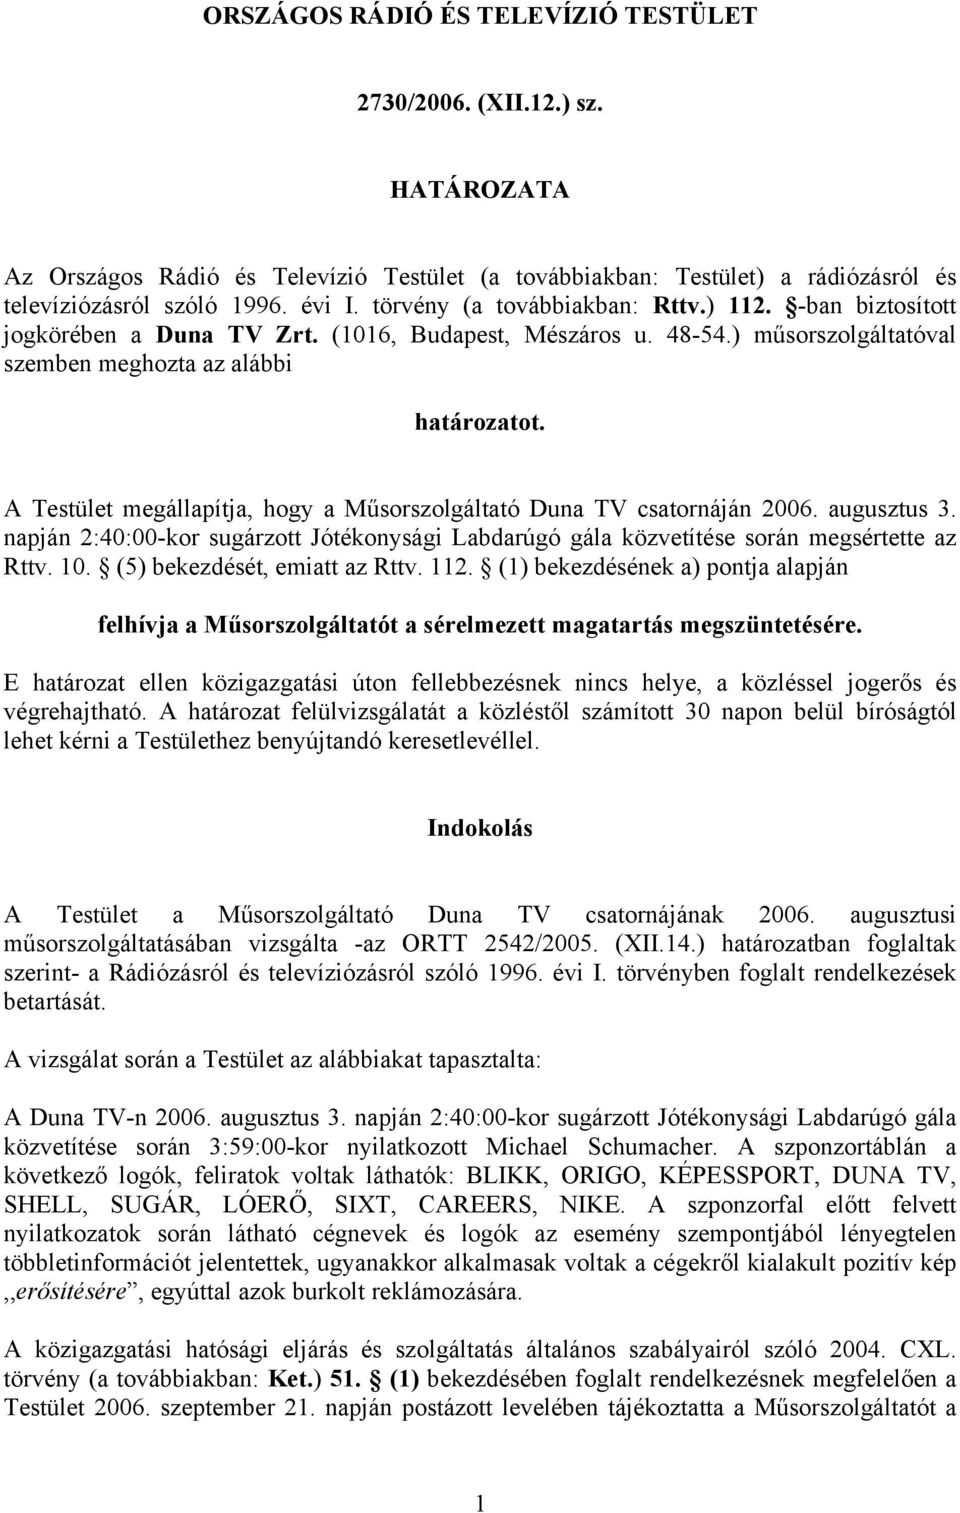 A Testület megállapítja, hogy a Műsorszolgáltató Duna TV csatornáján 2006. augusztus 3. napján 2:40:00-kor sugárzott Jótékonysági Labdarúgó gála közvetítése során megsértette az Rttv. 10.